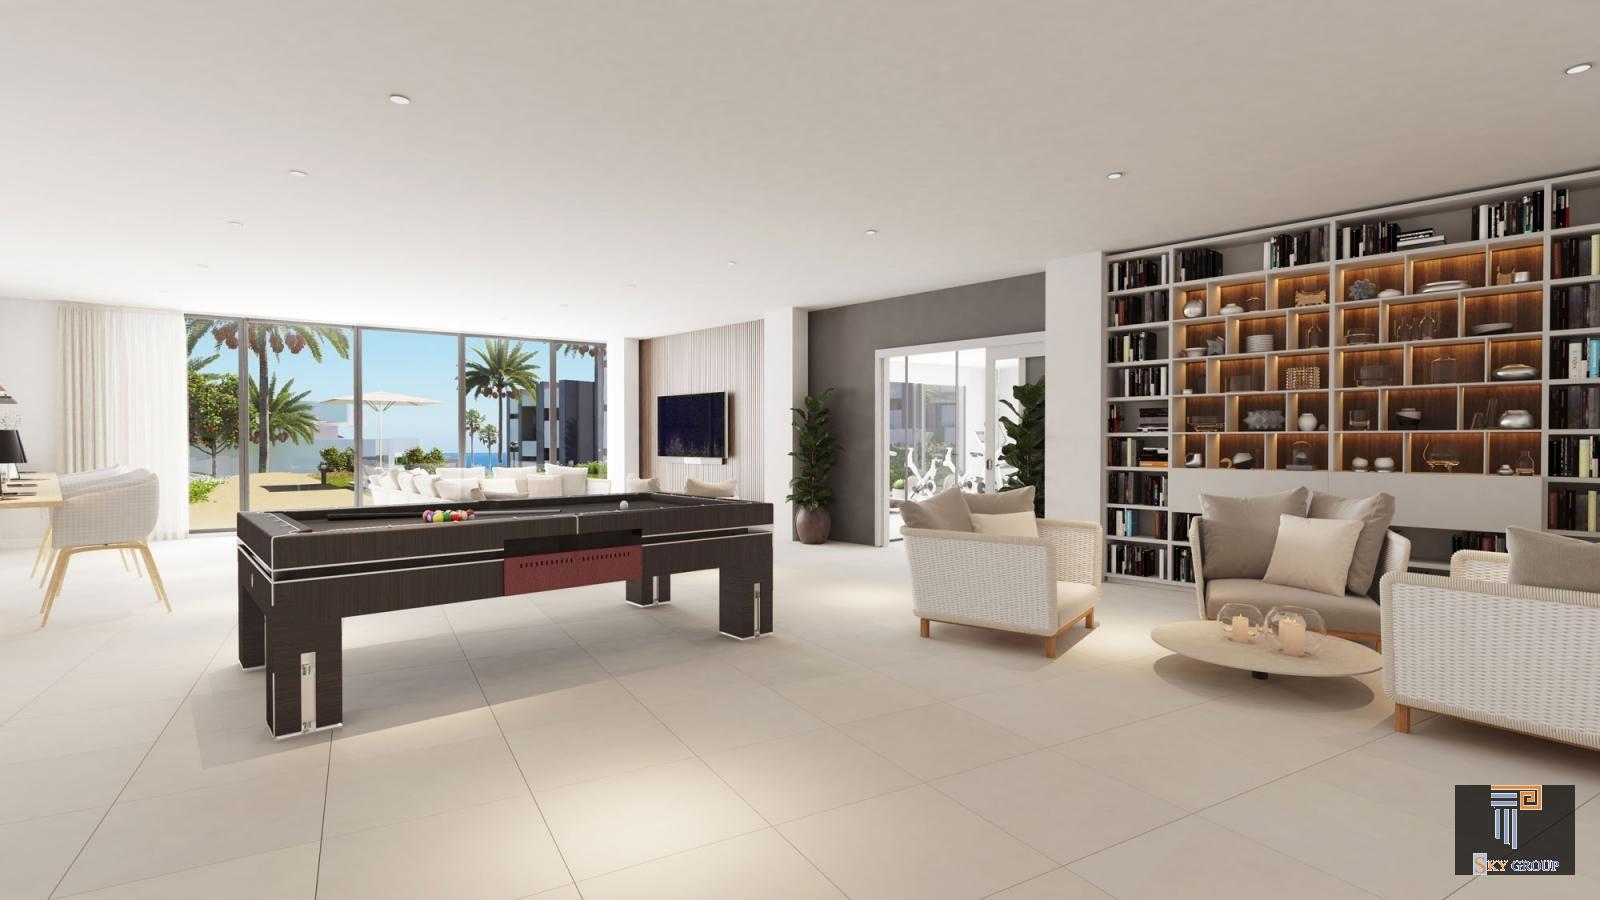 Luxury Apartment for sale in Manilva Costa (Manilva), 199.500 €